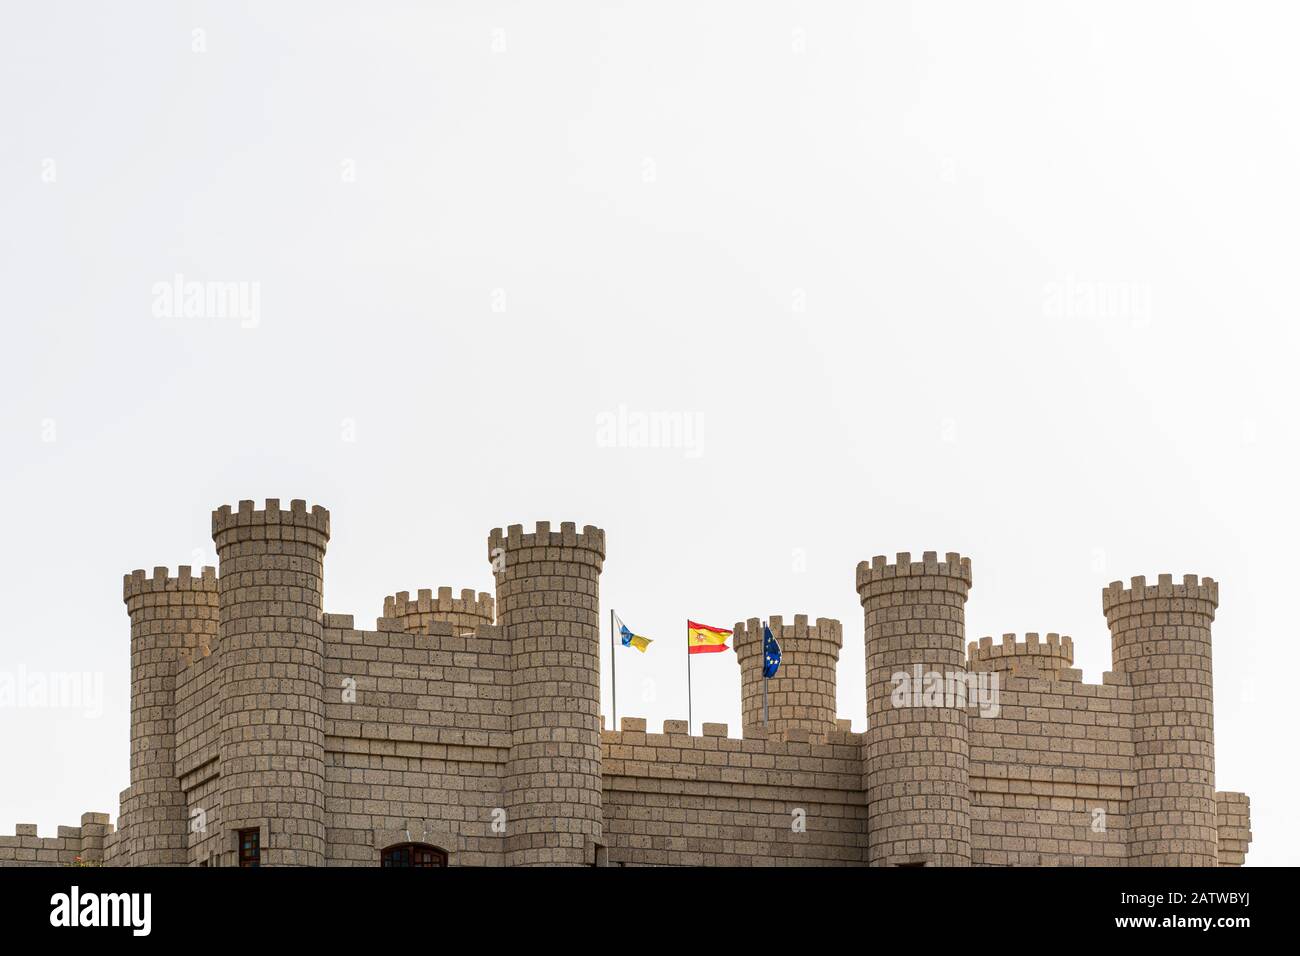 Torrette di Castello contro un cielo bianco con bandiere Canarie, spagnole ed europee battenti in Aldea Blanca, Tenerife, Isole Canarie, Spagna Foto Stock